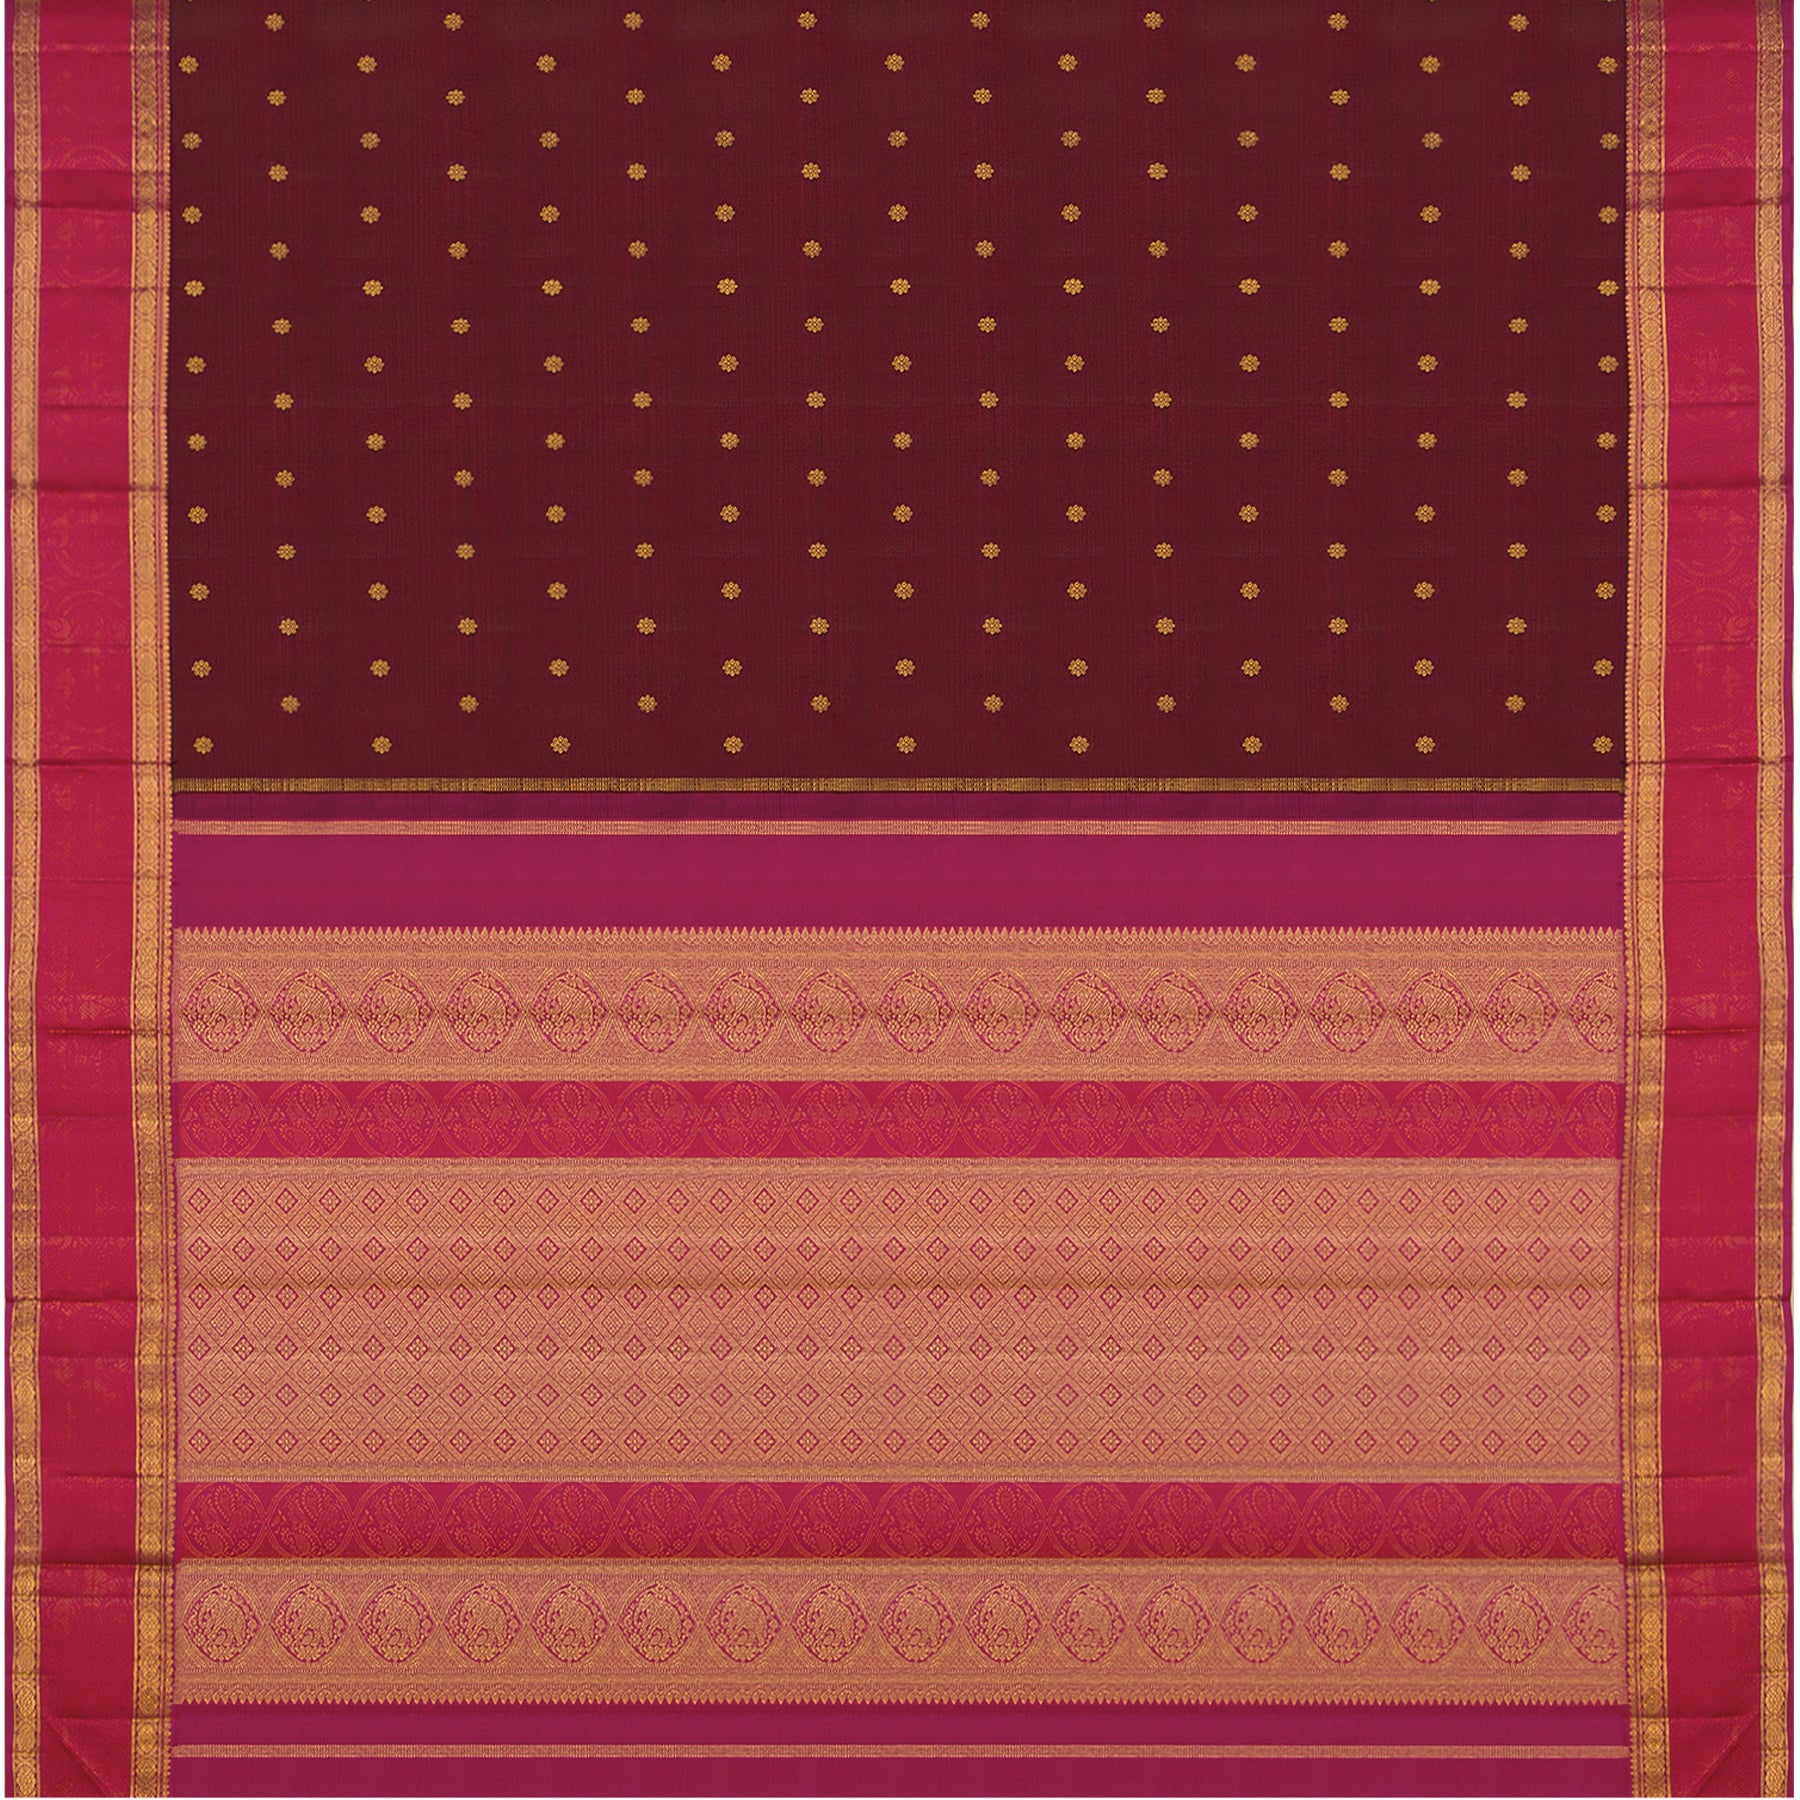 Kanakavalli Kanjivaram Silk Sari 23-110-HS001-01023 - Full View